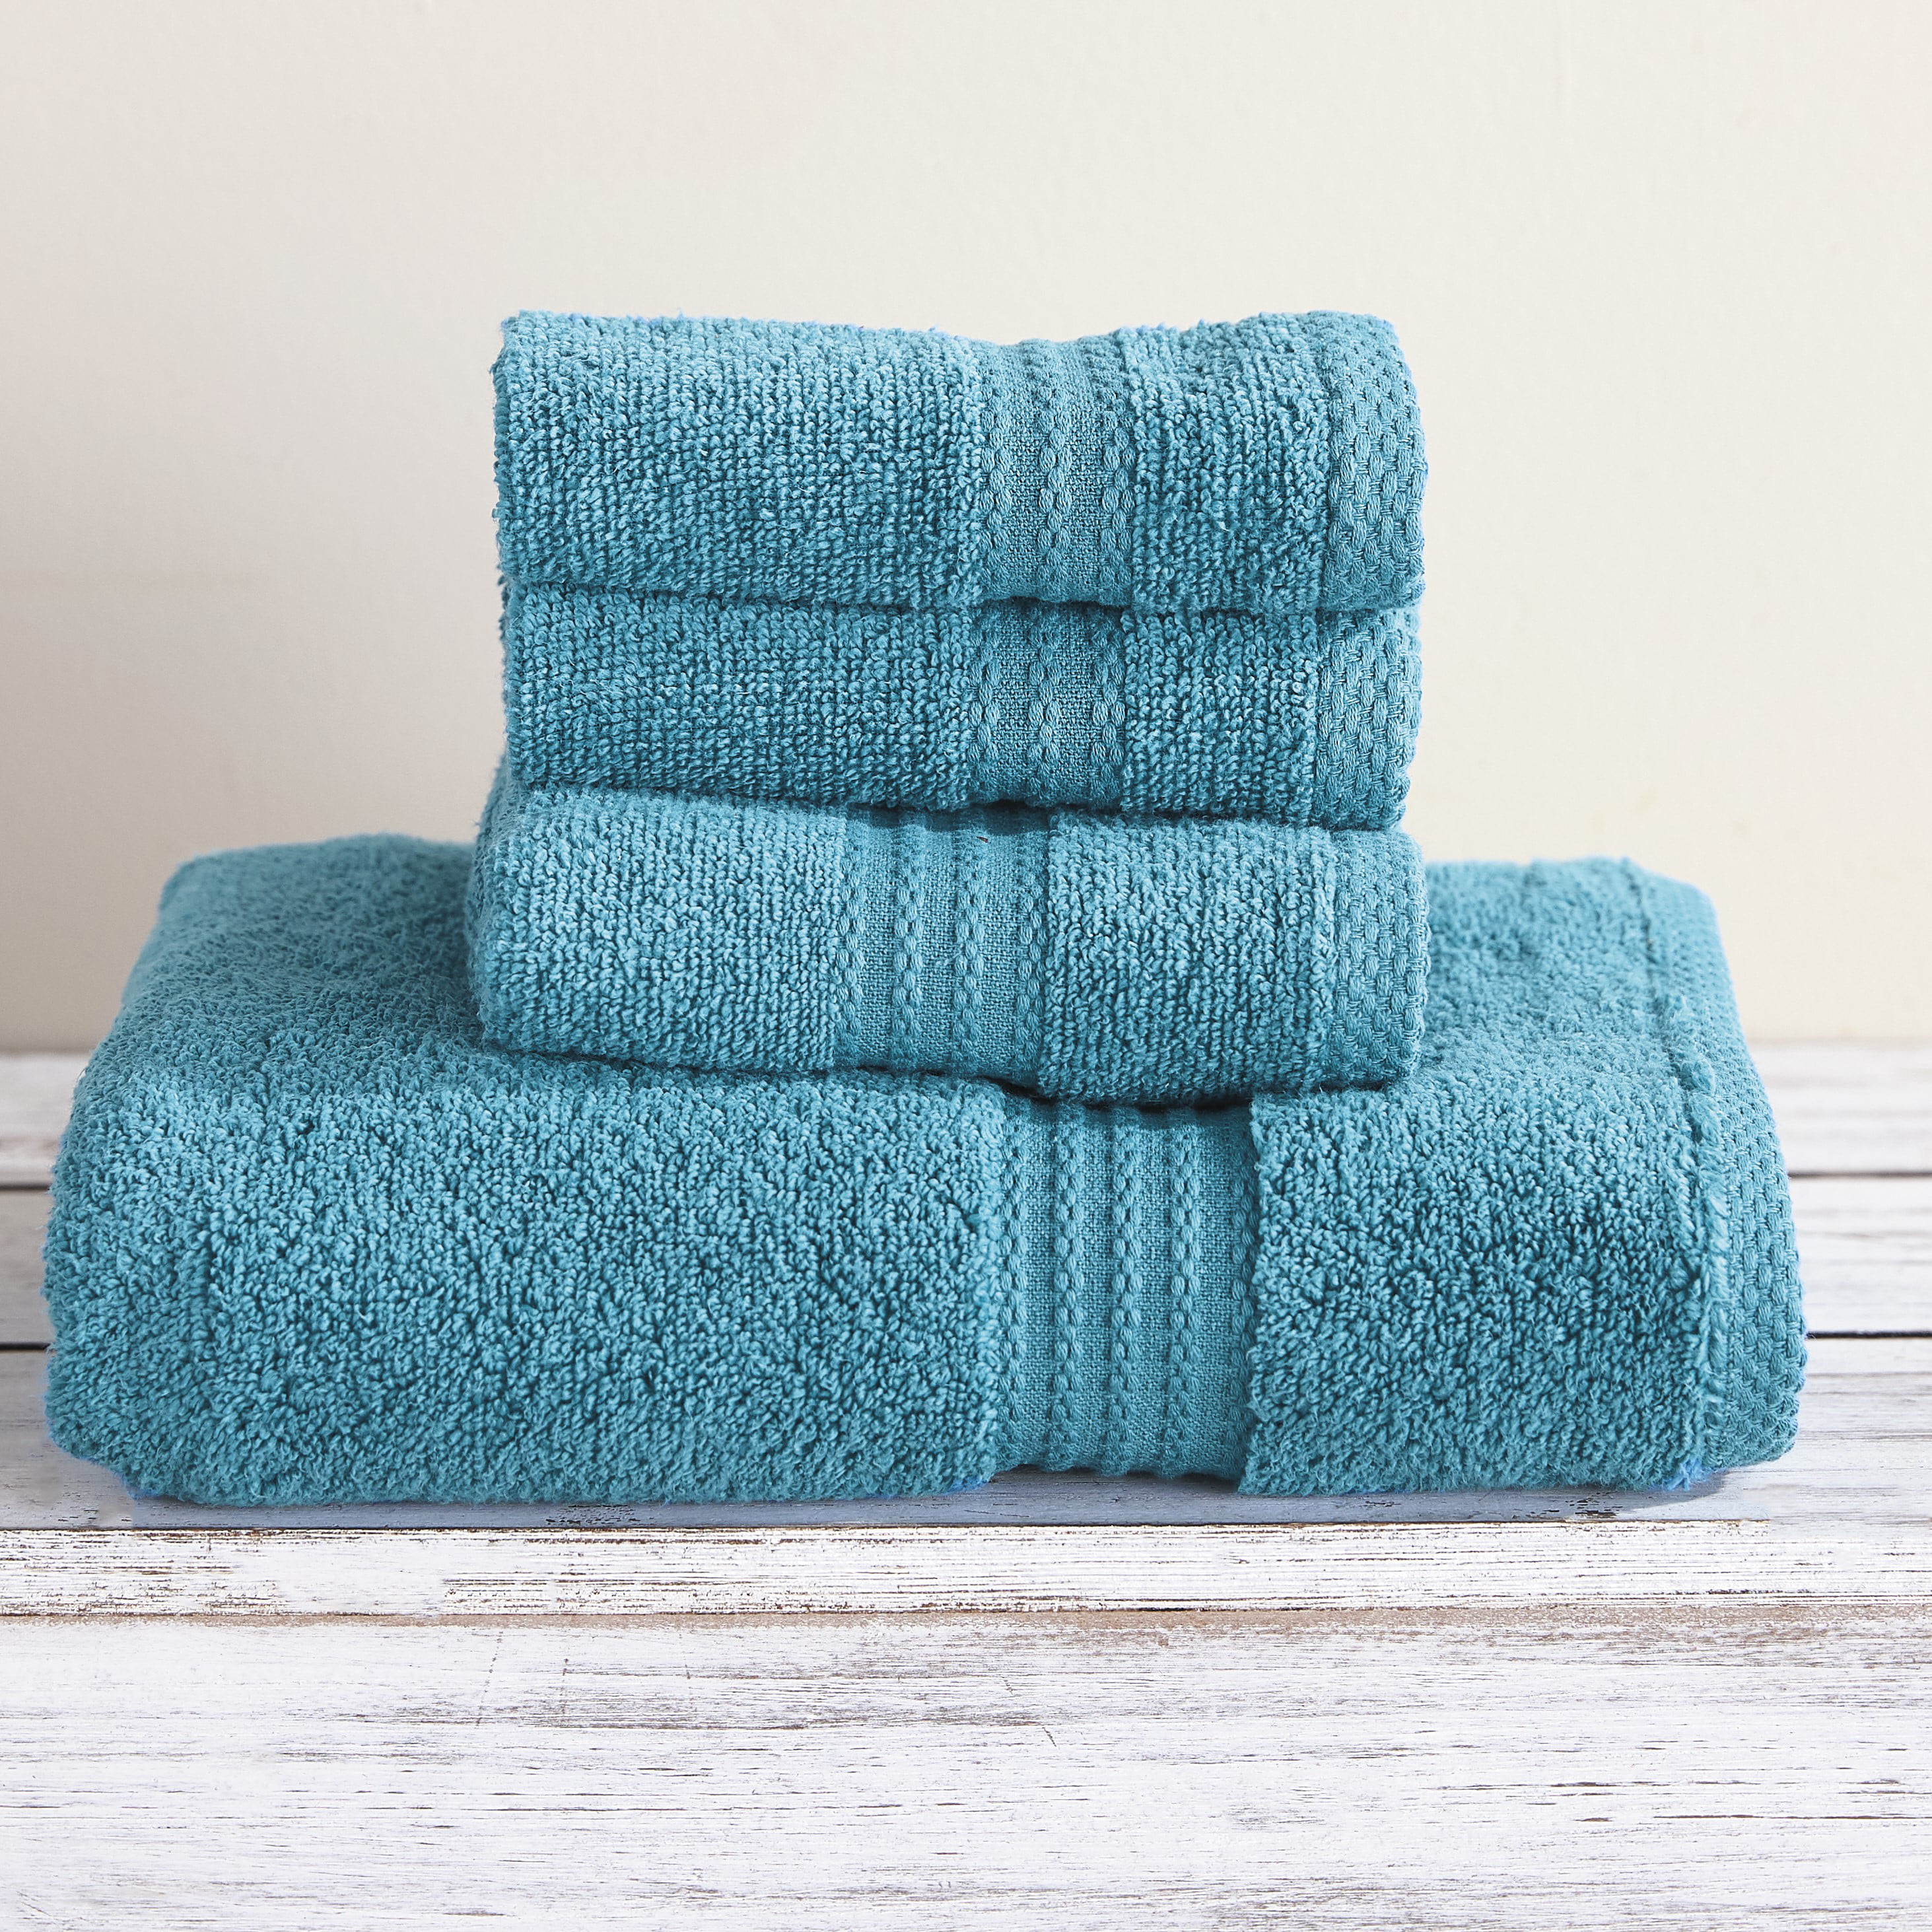 Details about   Towels 100% Cotton Zero Twist Face Cloth Hand Towel Bath Sheet Soft Thick 600gsm 